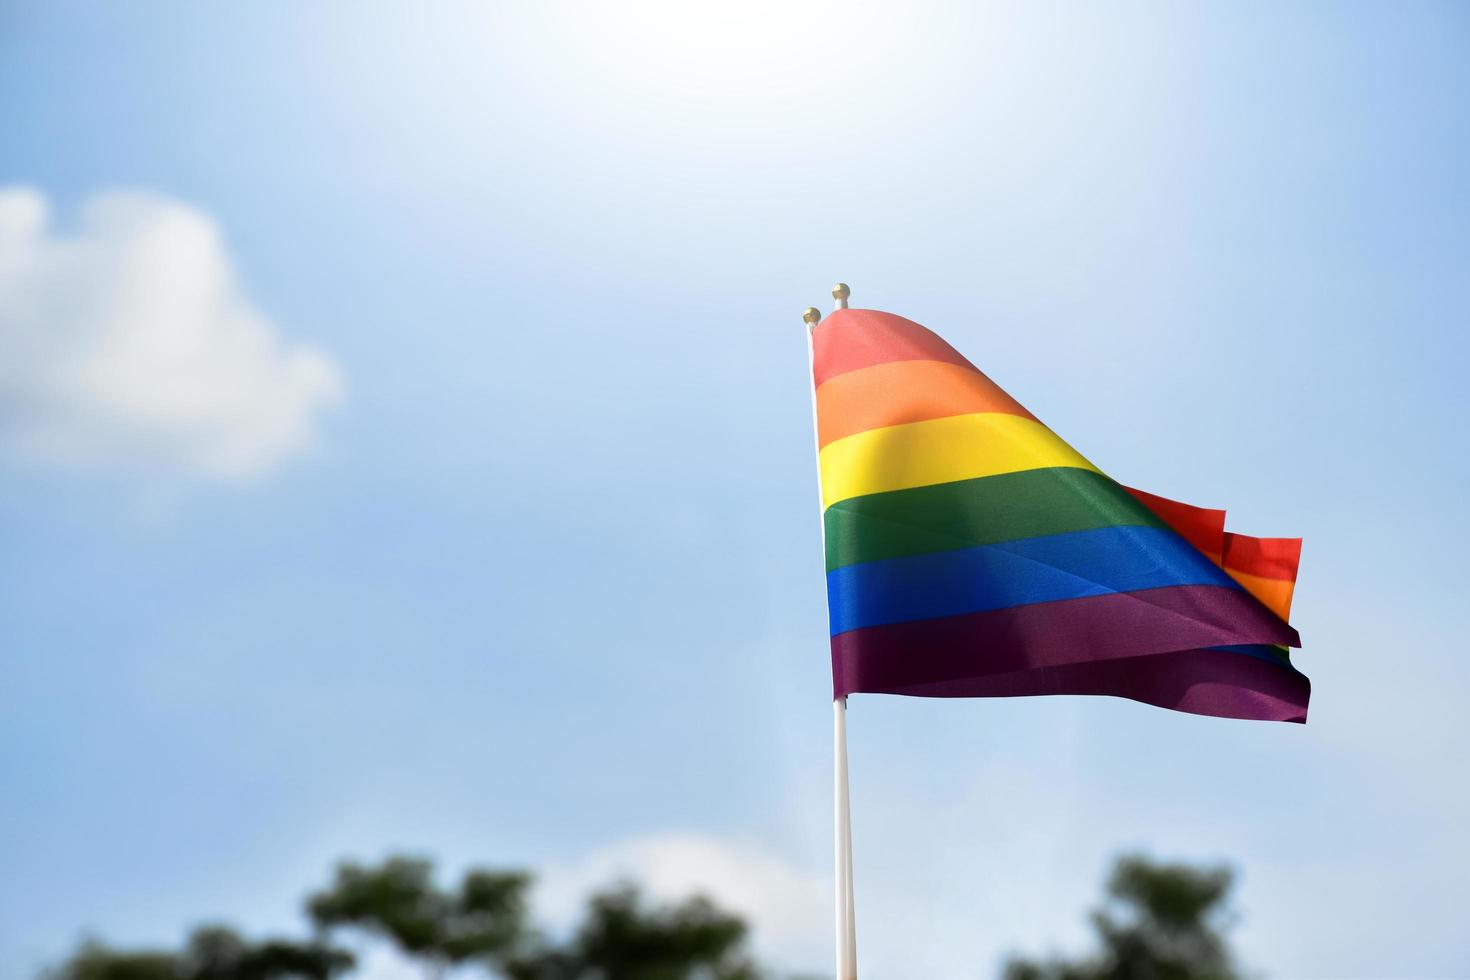 fierté arc-en-ciel drapeau gay lgbt tenant dans la main et agité dans la brise contre le ciel bleu. photo